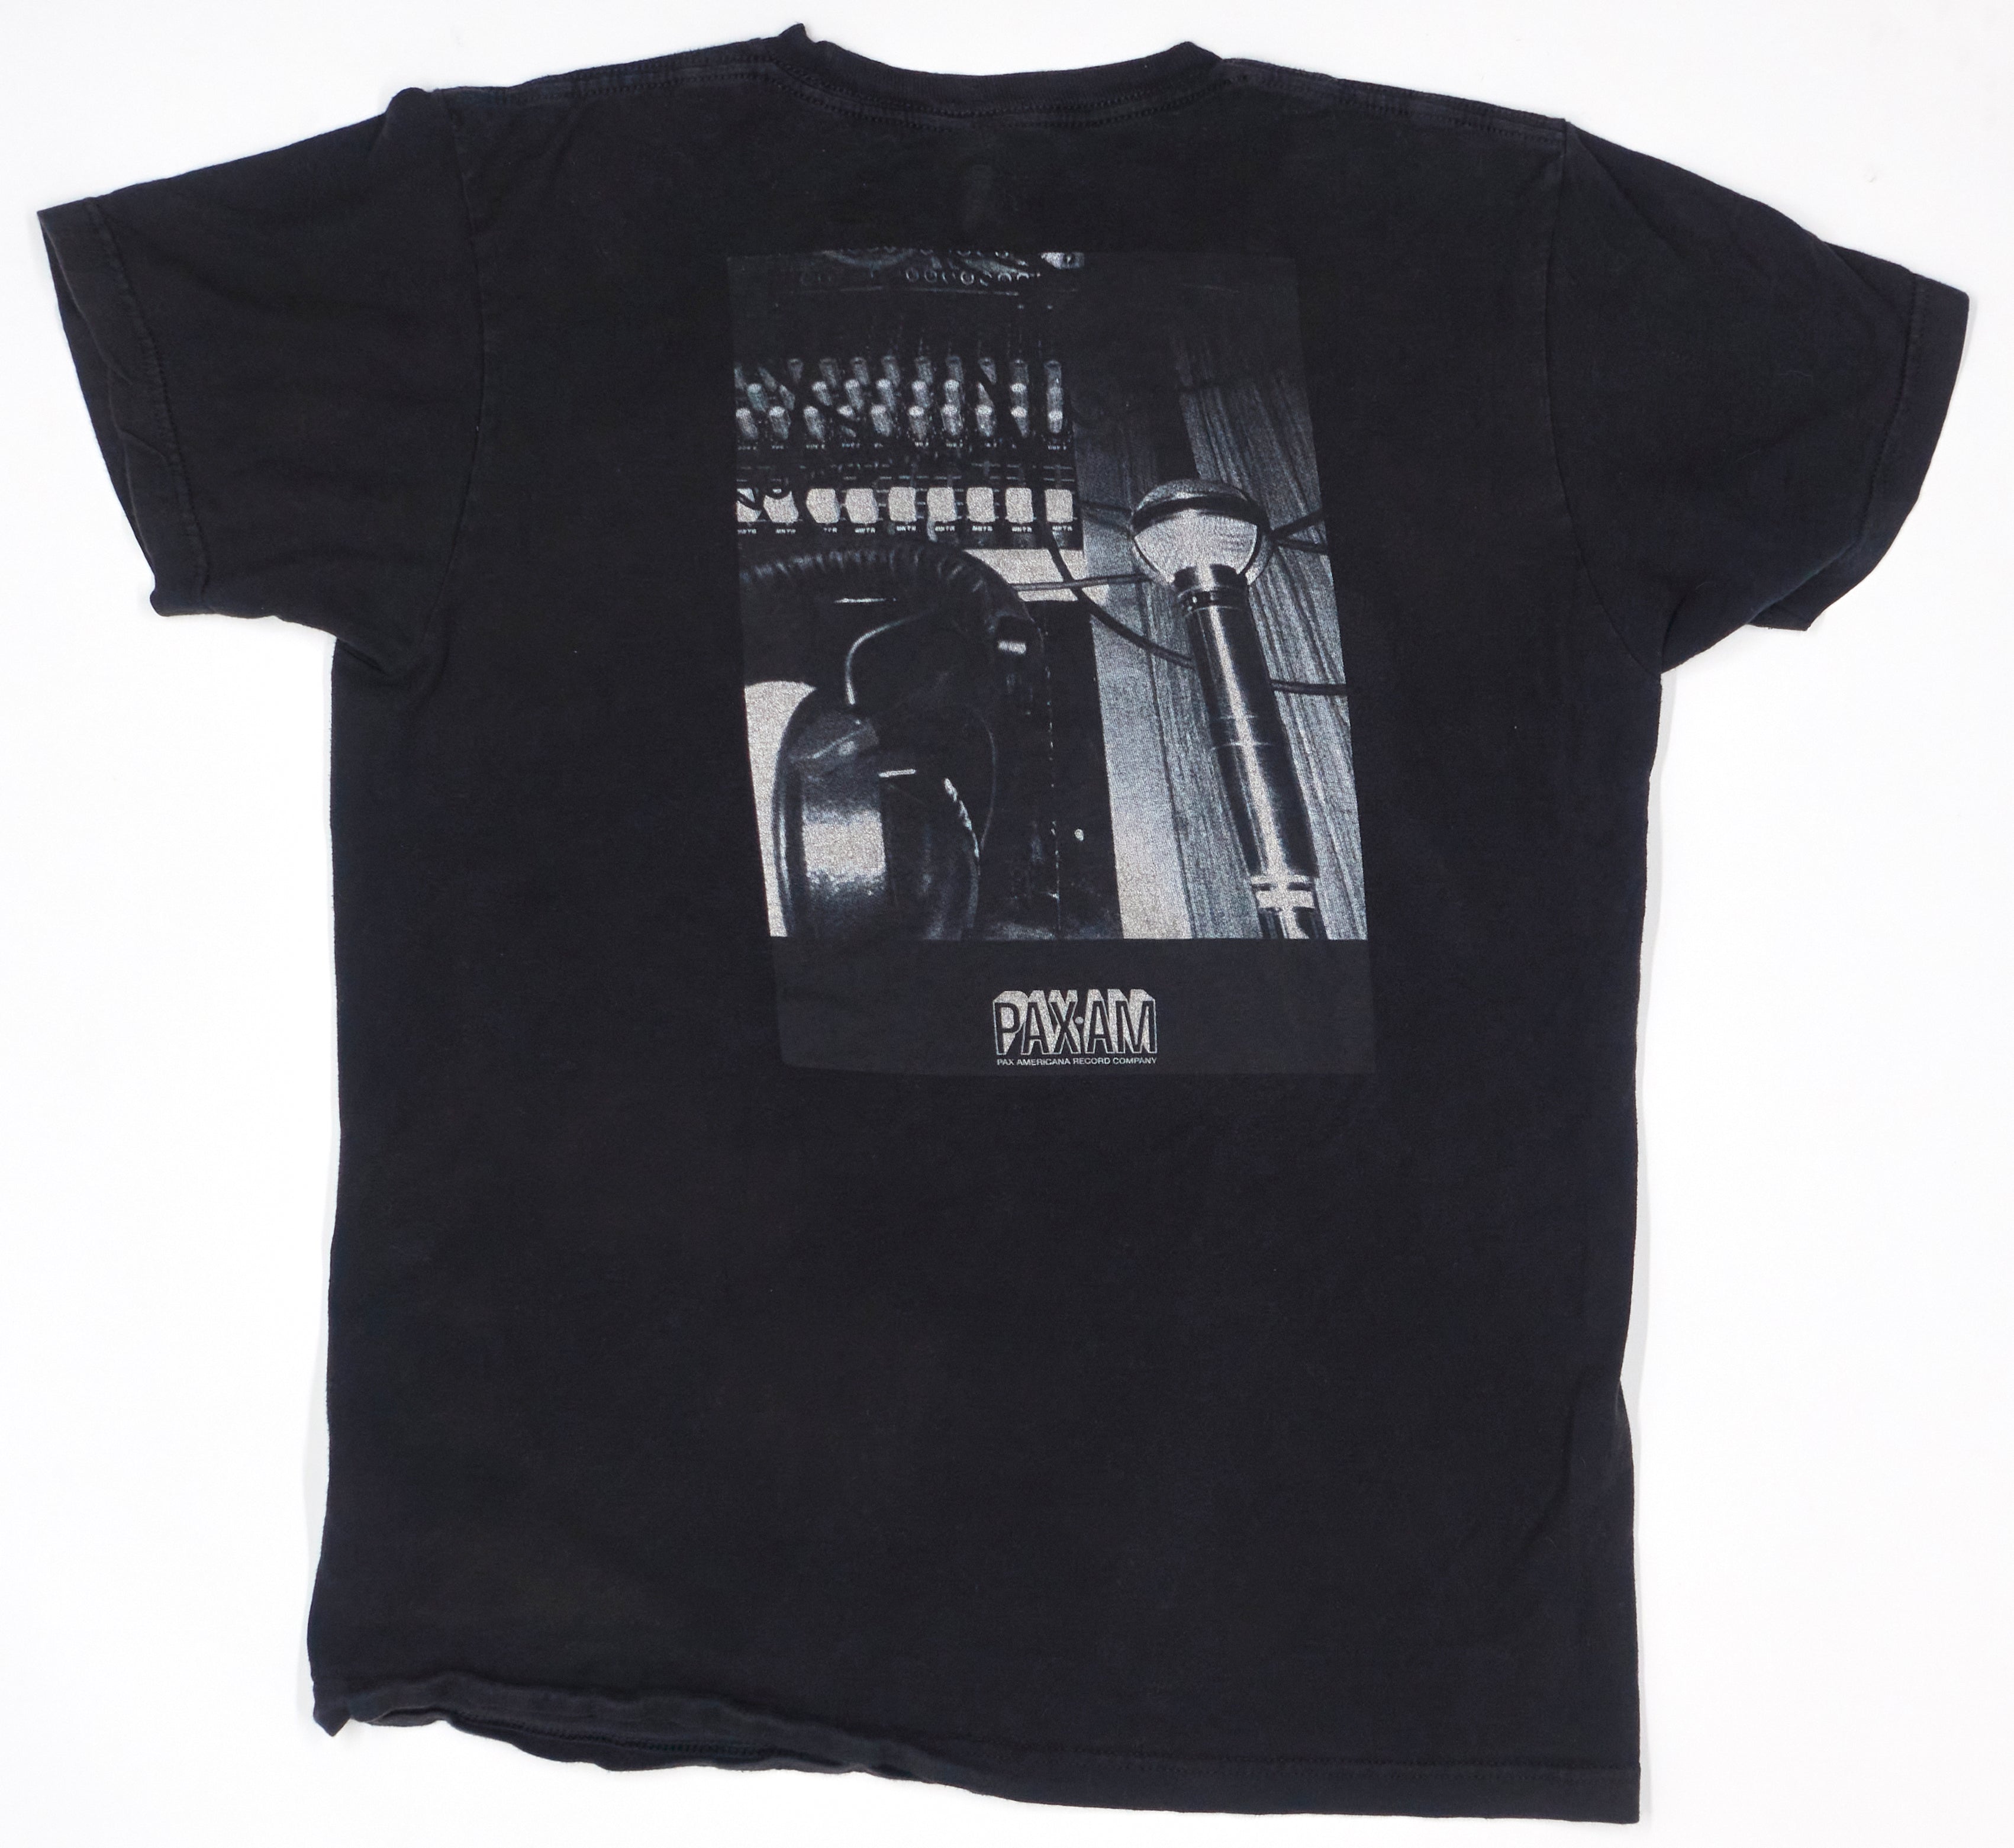 Ryan Adams – 1984 2041 Tour Shirt Size Medium